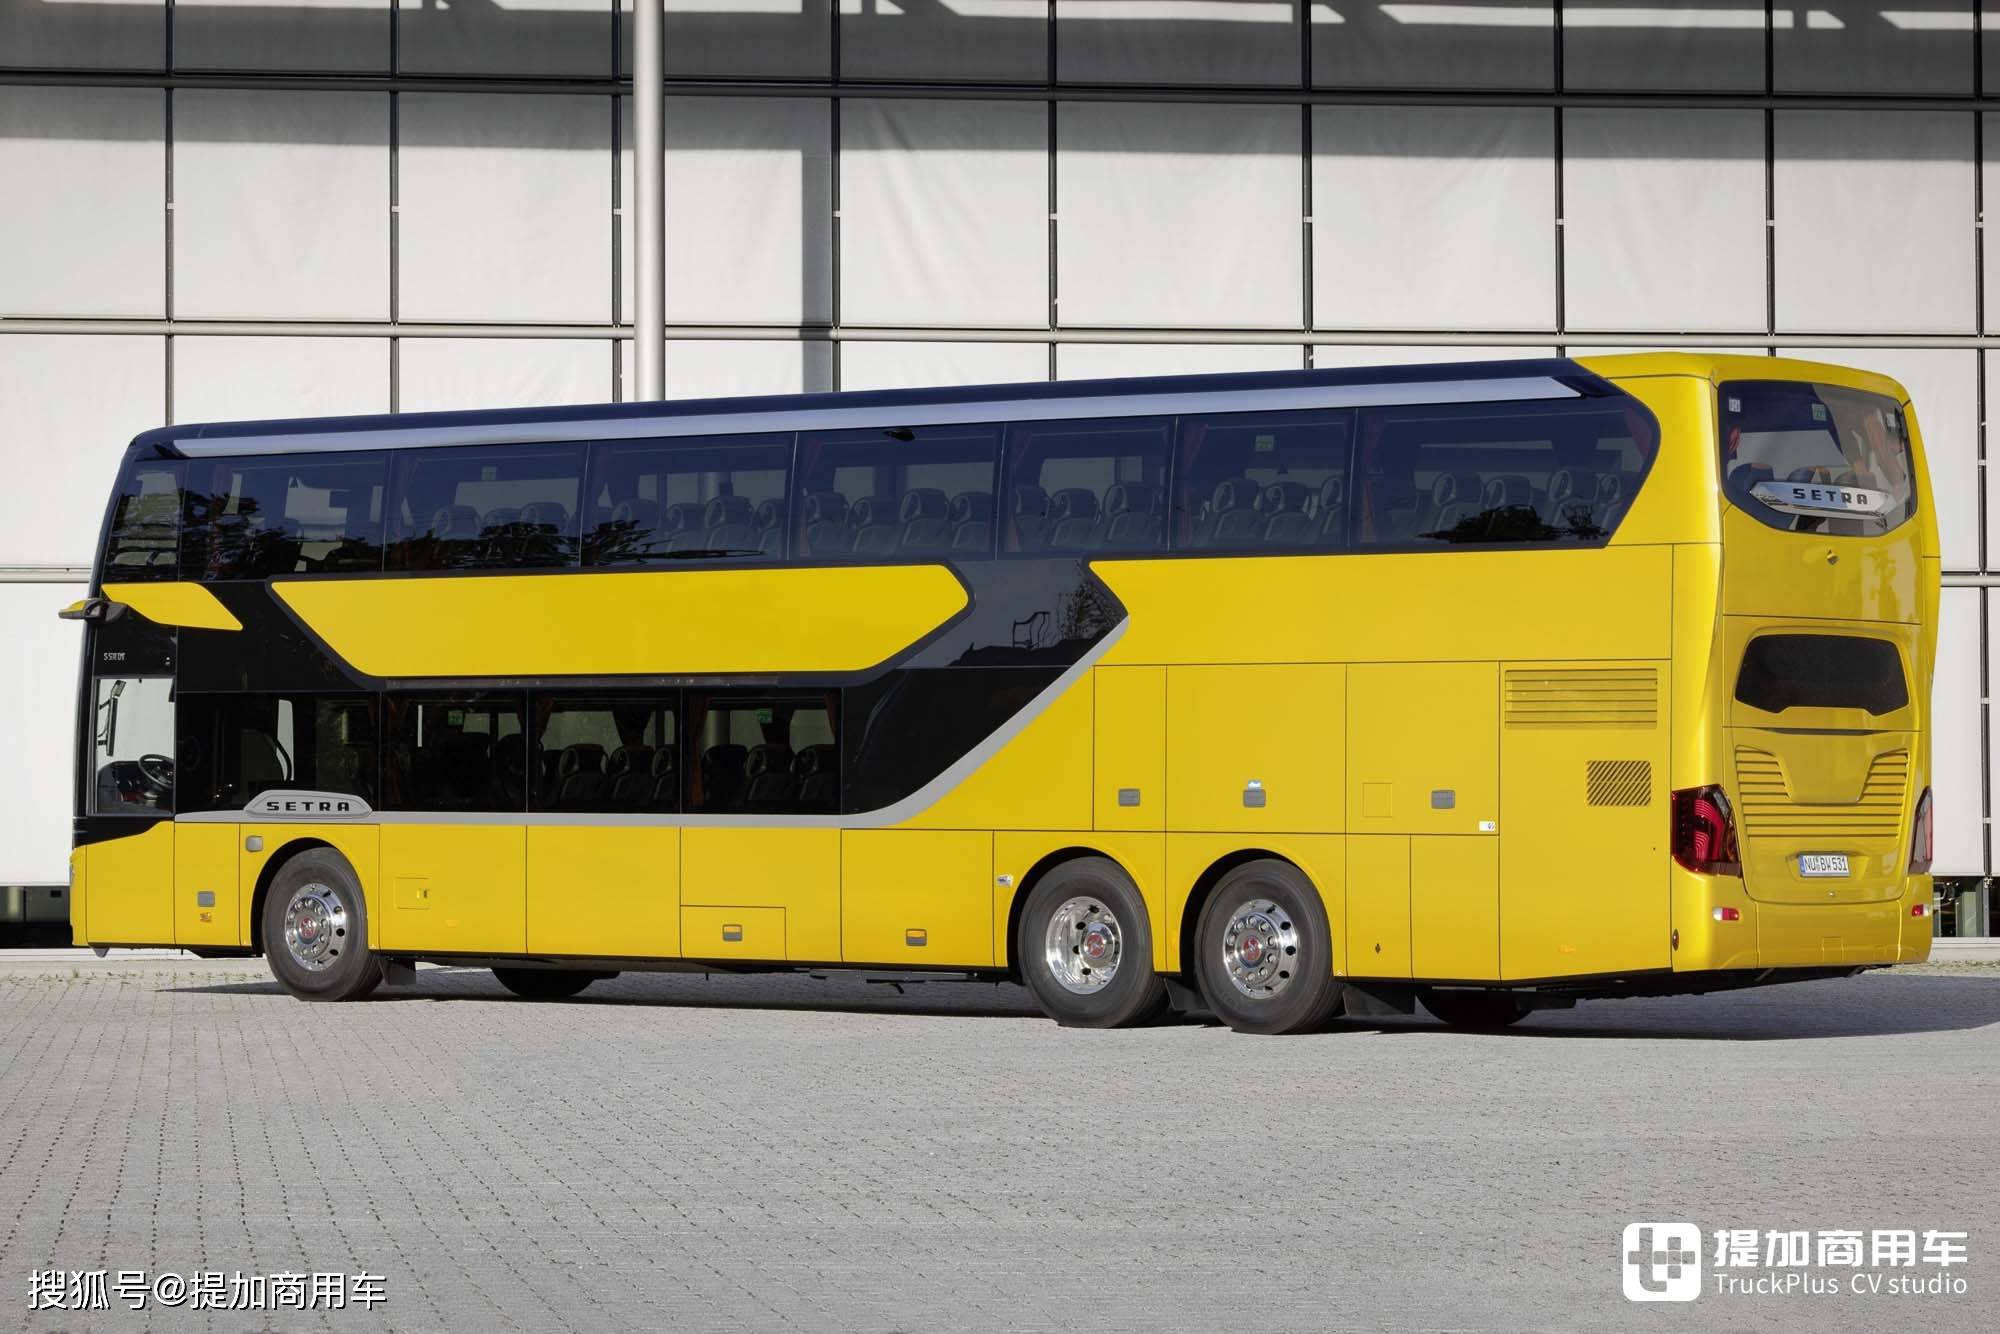 这才是客车,赛特拉s531 dt豪华双层巴士实拍,把客车的豪华演绎到极致